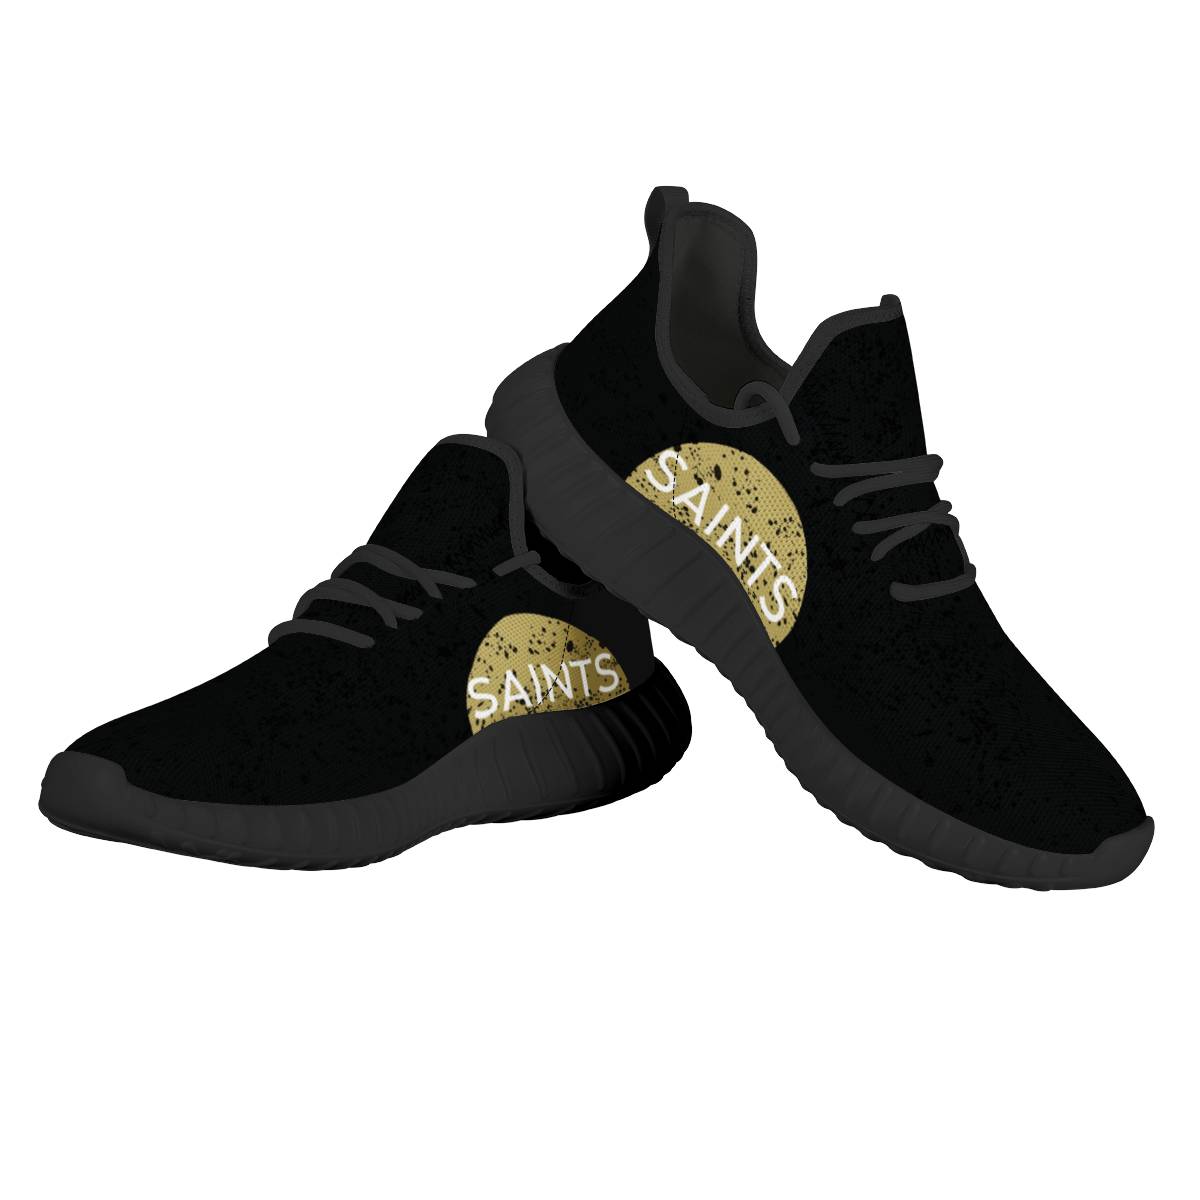 Women's New Orleans Saints Mesh Knit Sneakers/Shoes 011